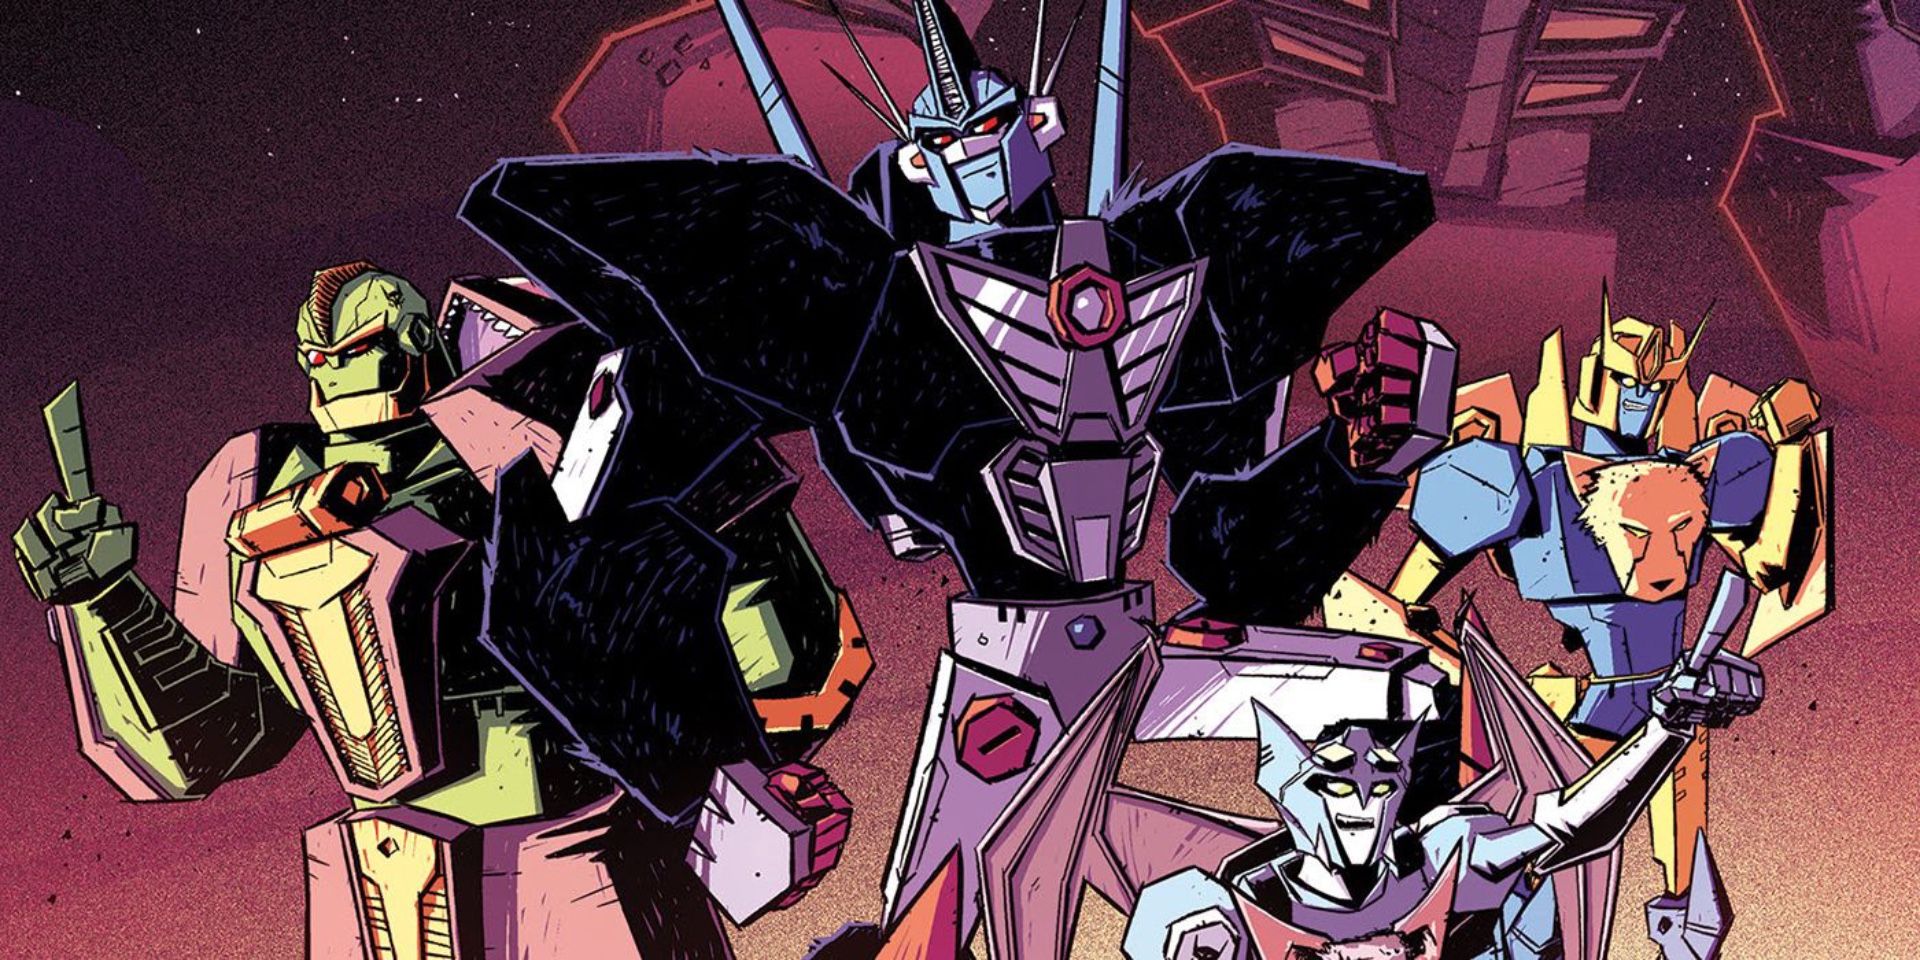 Transformers-predacons-beast-wars